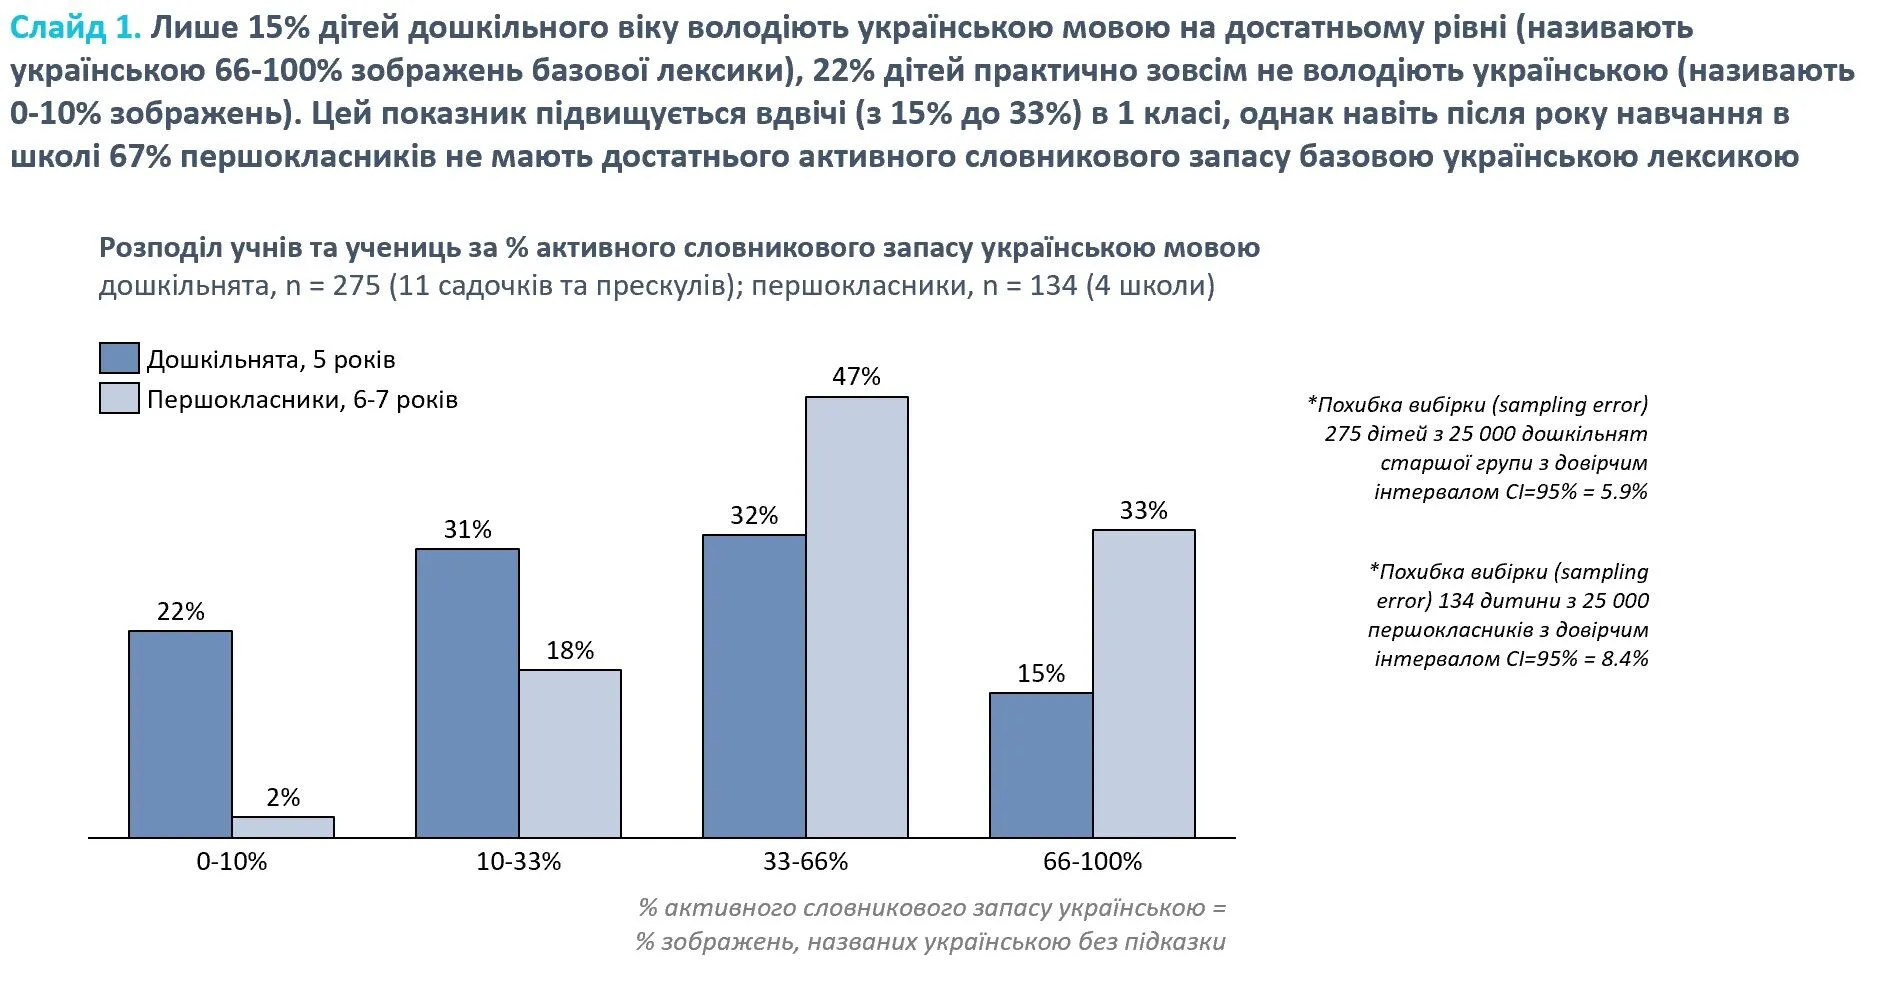 Кожна п'ята дитина дошкільного віку в Києві практично не володіє українською мовою. Результати дослідження